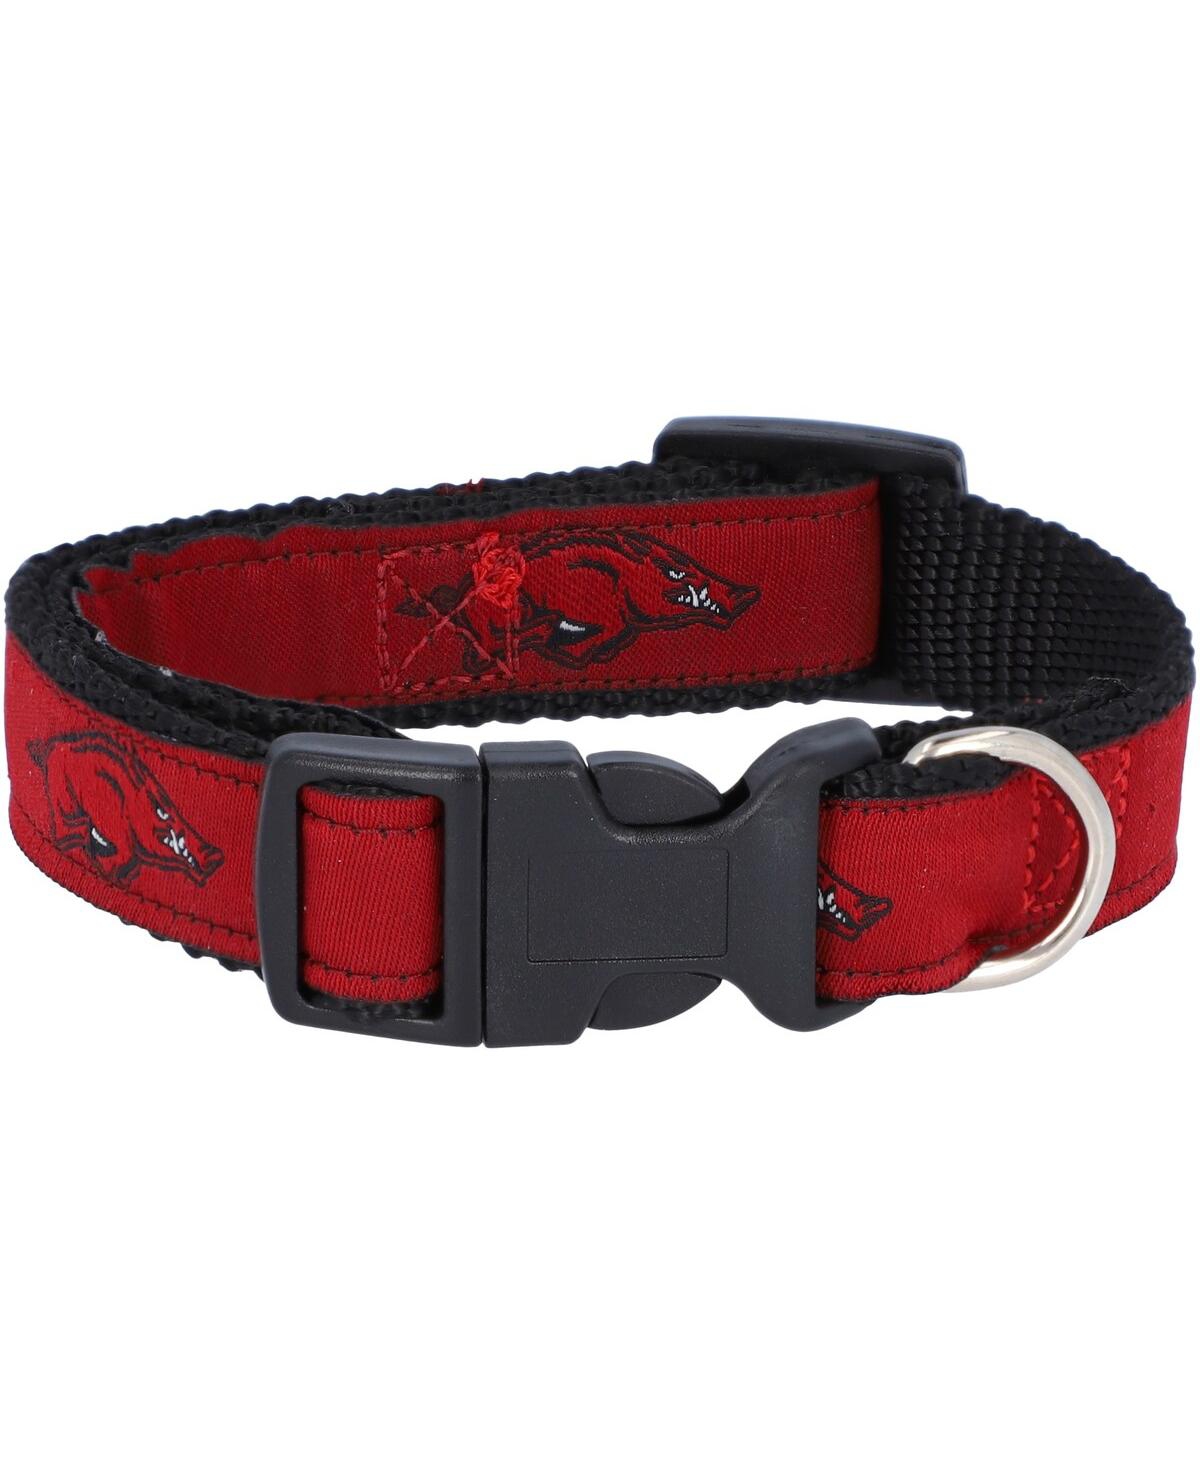 Arkansas Razorbacks Narrow Dog Collar - Red